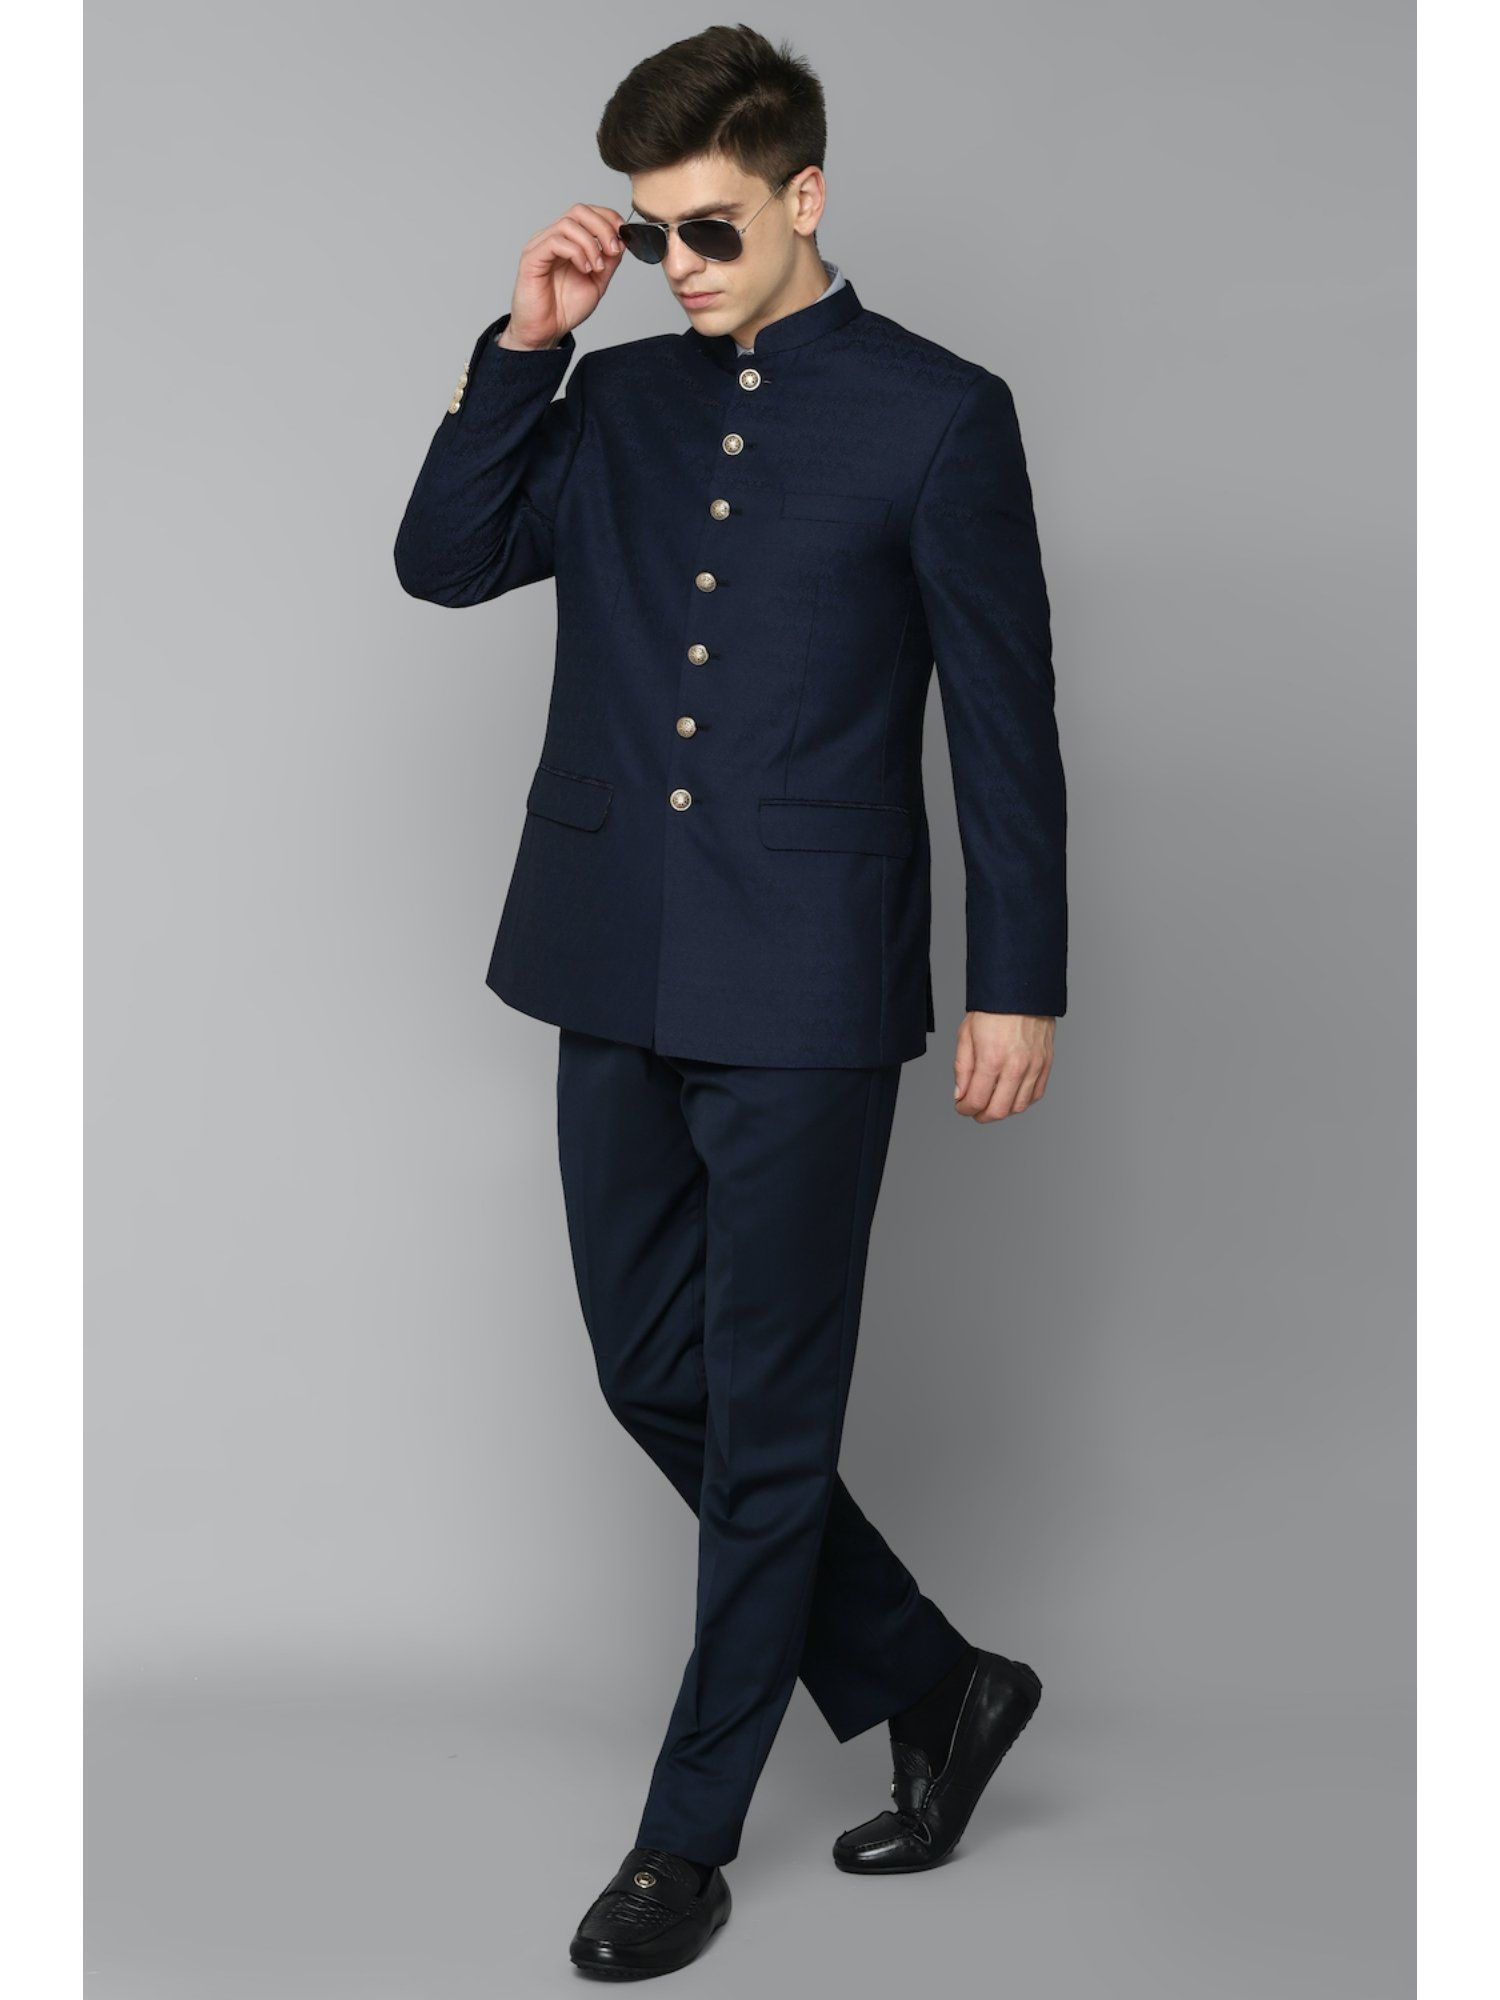 Top Louis Philippe Men Suit Retailers in Kanpur - Best Louis Philippe Men  Suit Retailers - Justdial